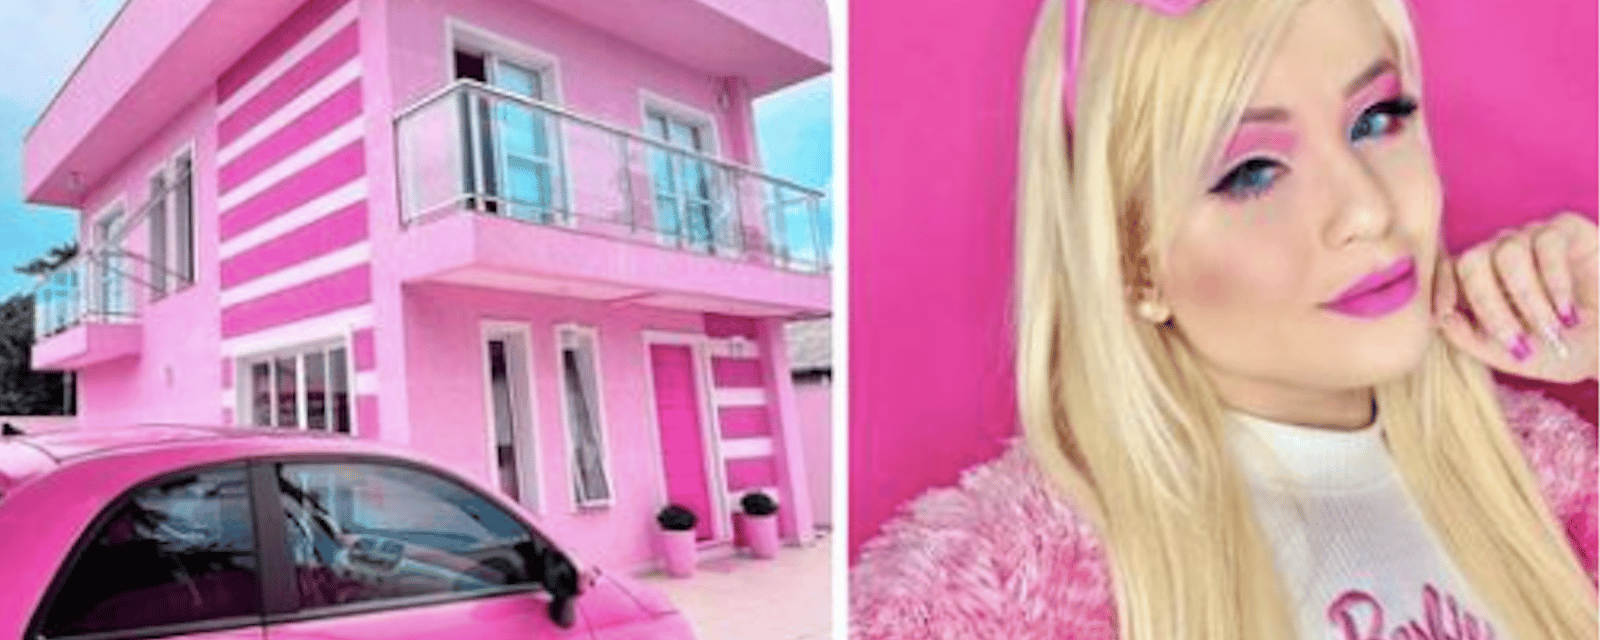 Obsédée par Barbie, elle habite une maison totalement rose